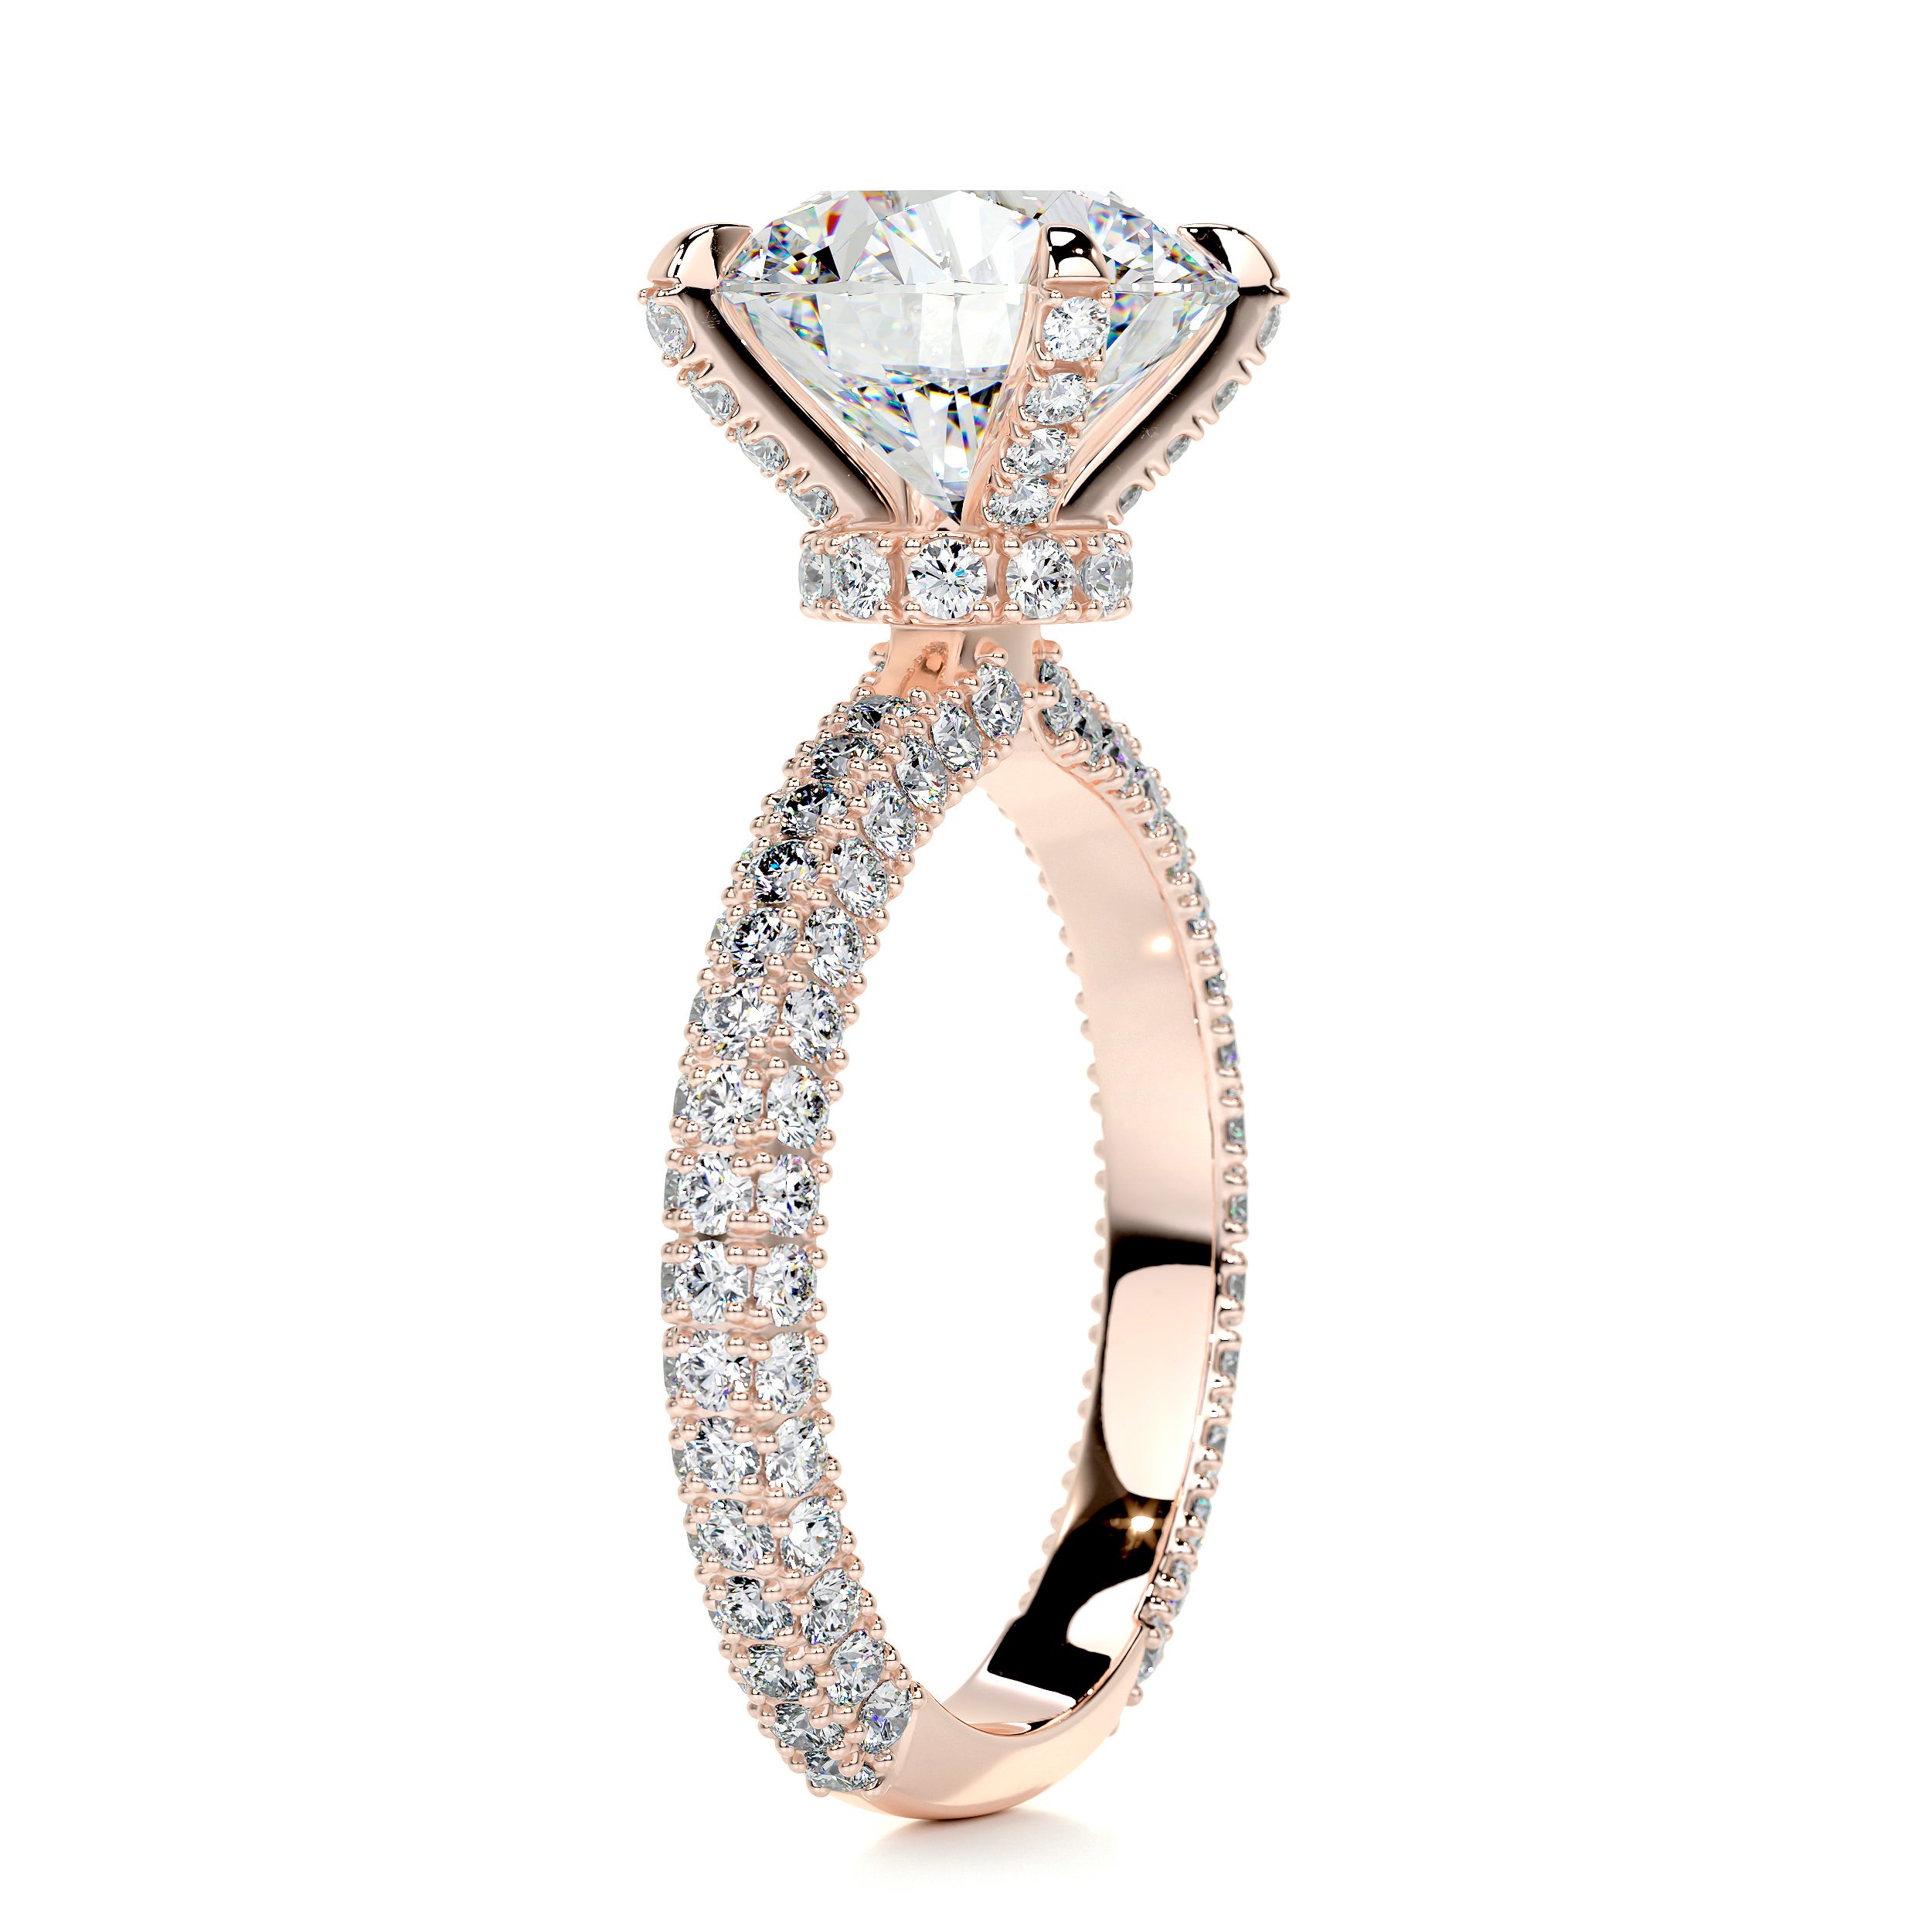 Milly Moissanite & Diamonds Ring   (4.12 Carat) -14K Rose Gold